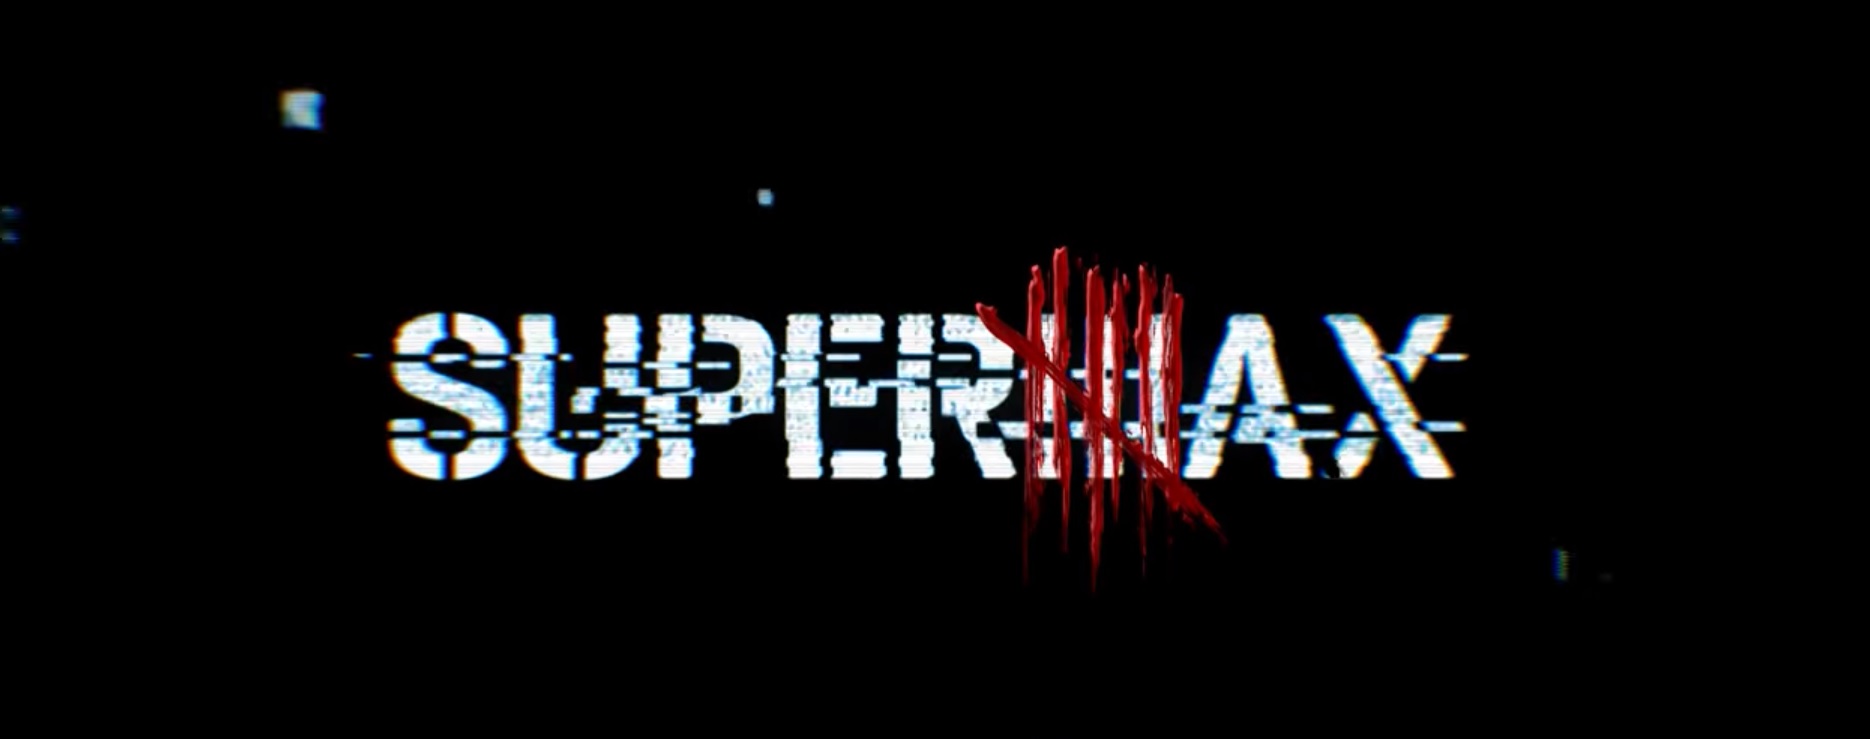 TV: "Supermax", série de terror da Globo, ganha novo teaser assustador; assista